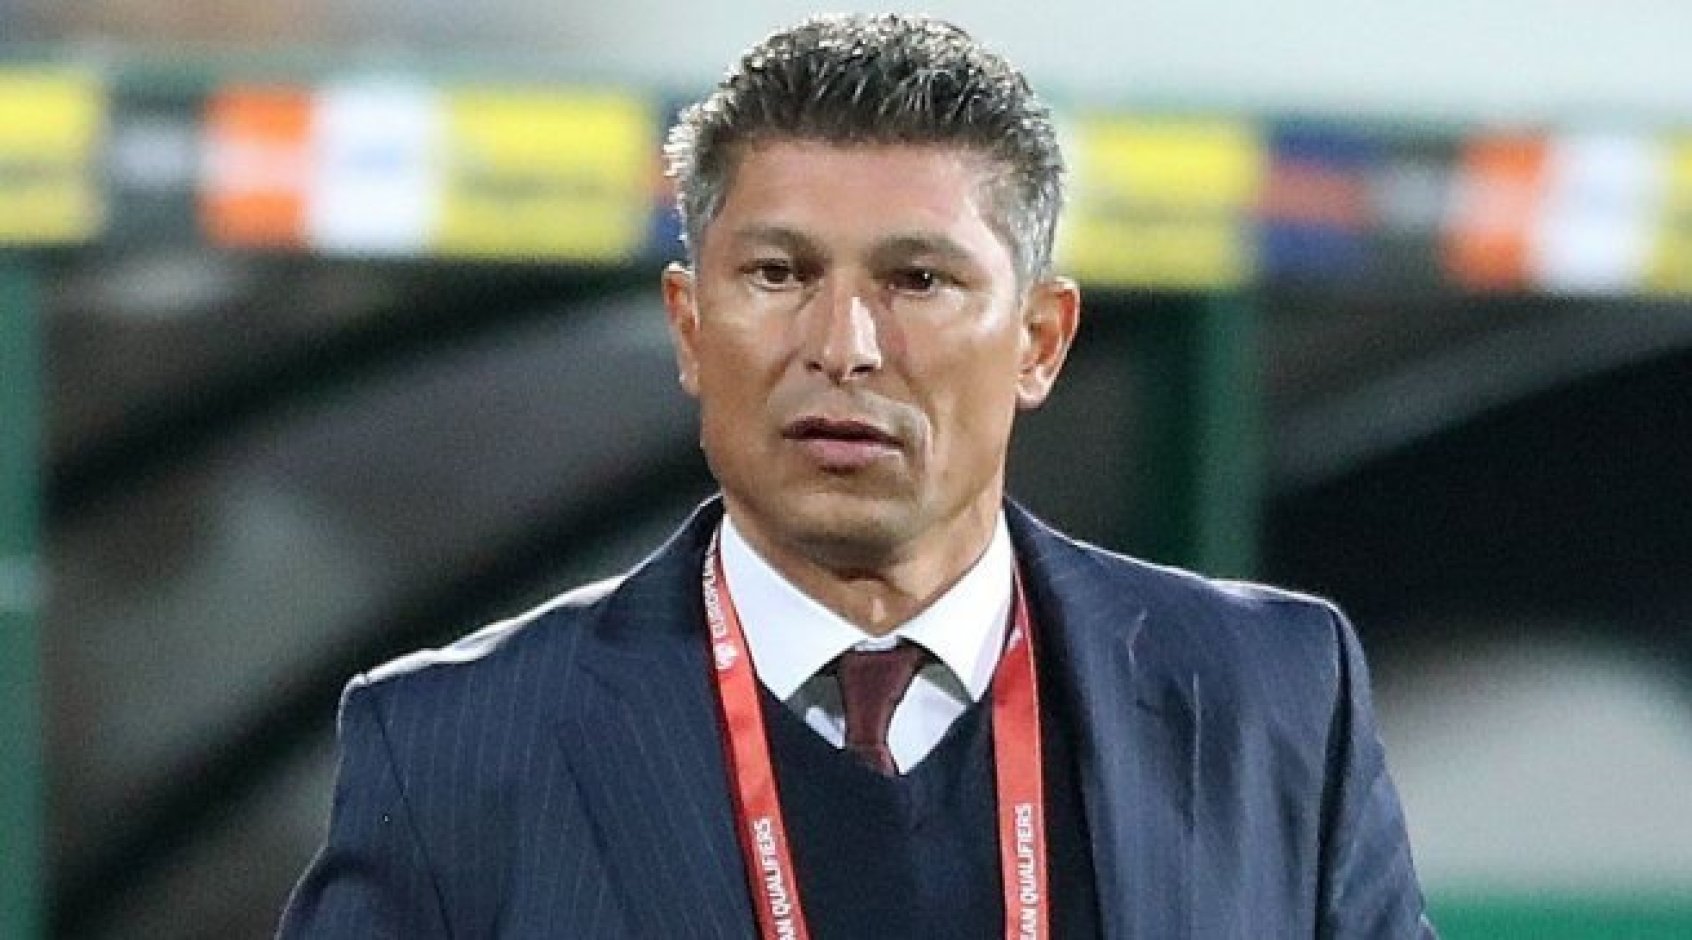 Наставник сборной Болгарии Балаков подал в отставку после расистского скандала в матче с Англией